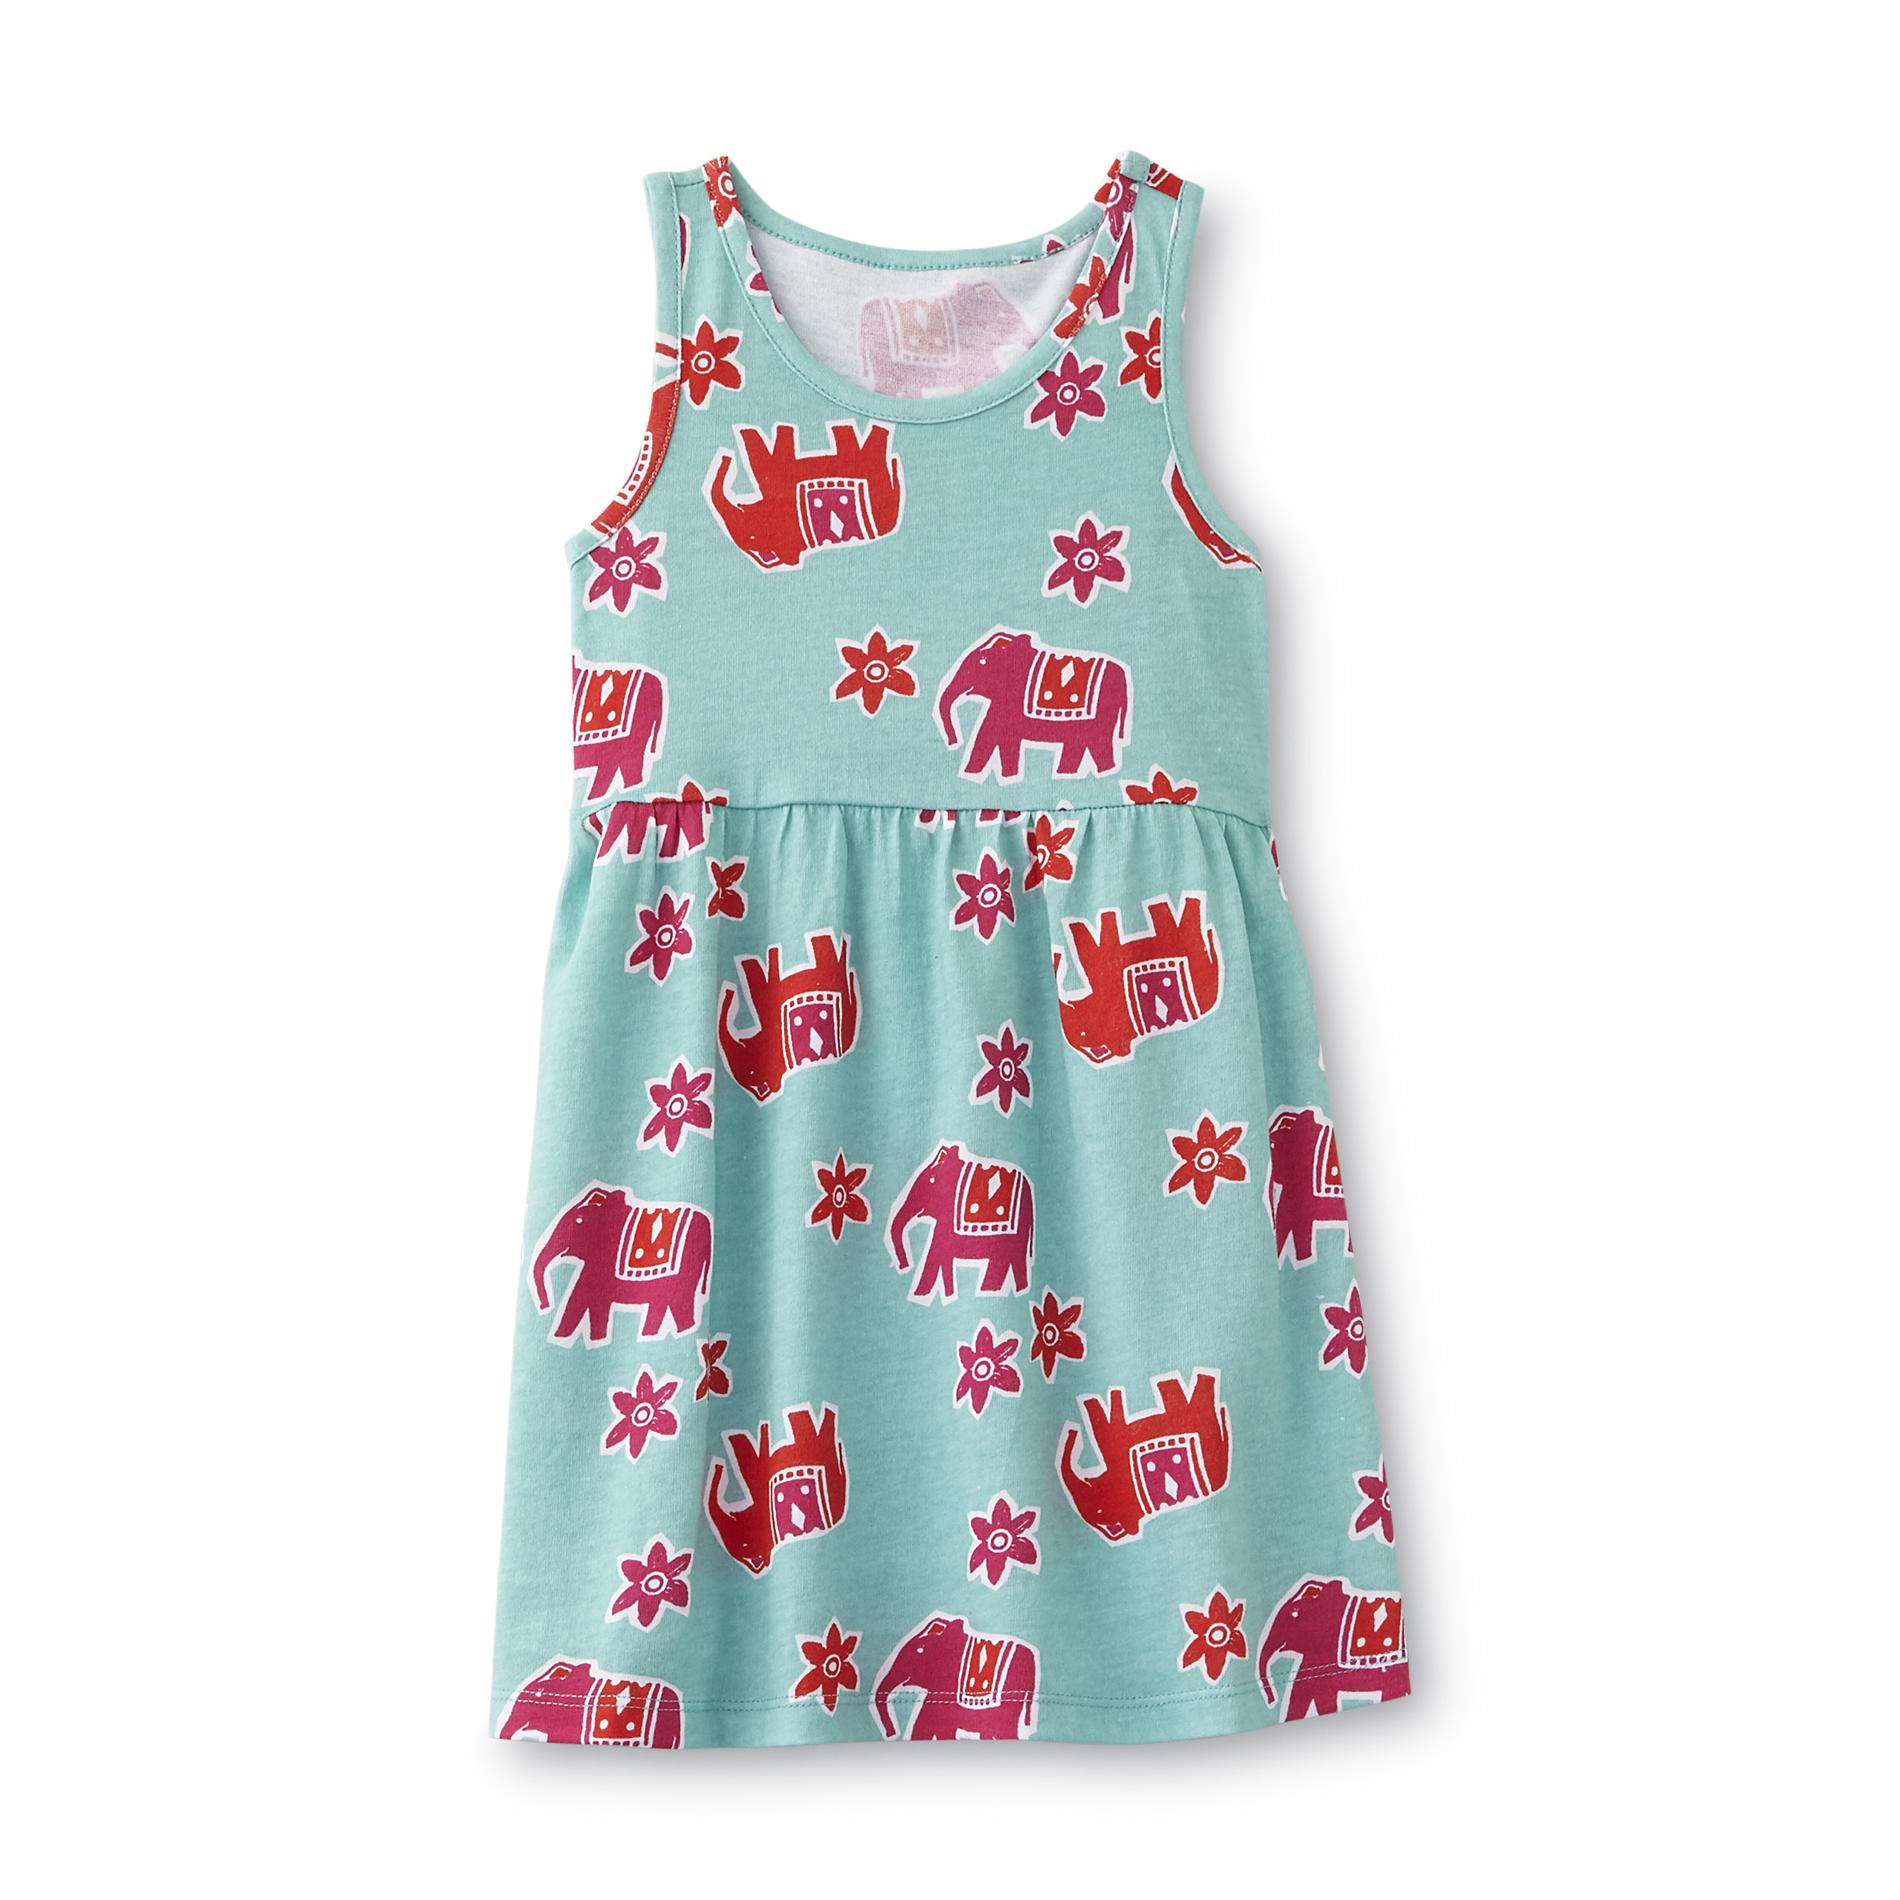 Toughskins Infant & Toddler Girl's Sundress - Elephants